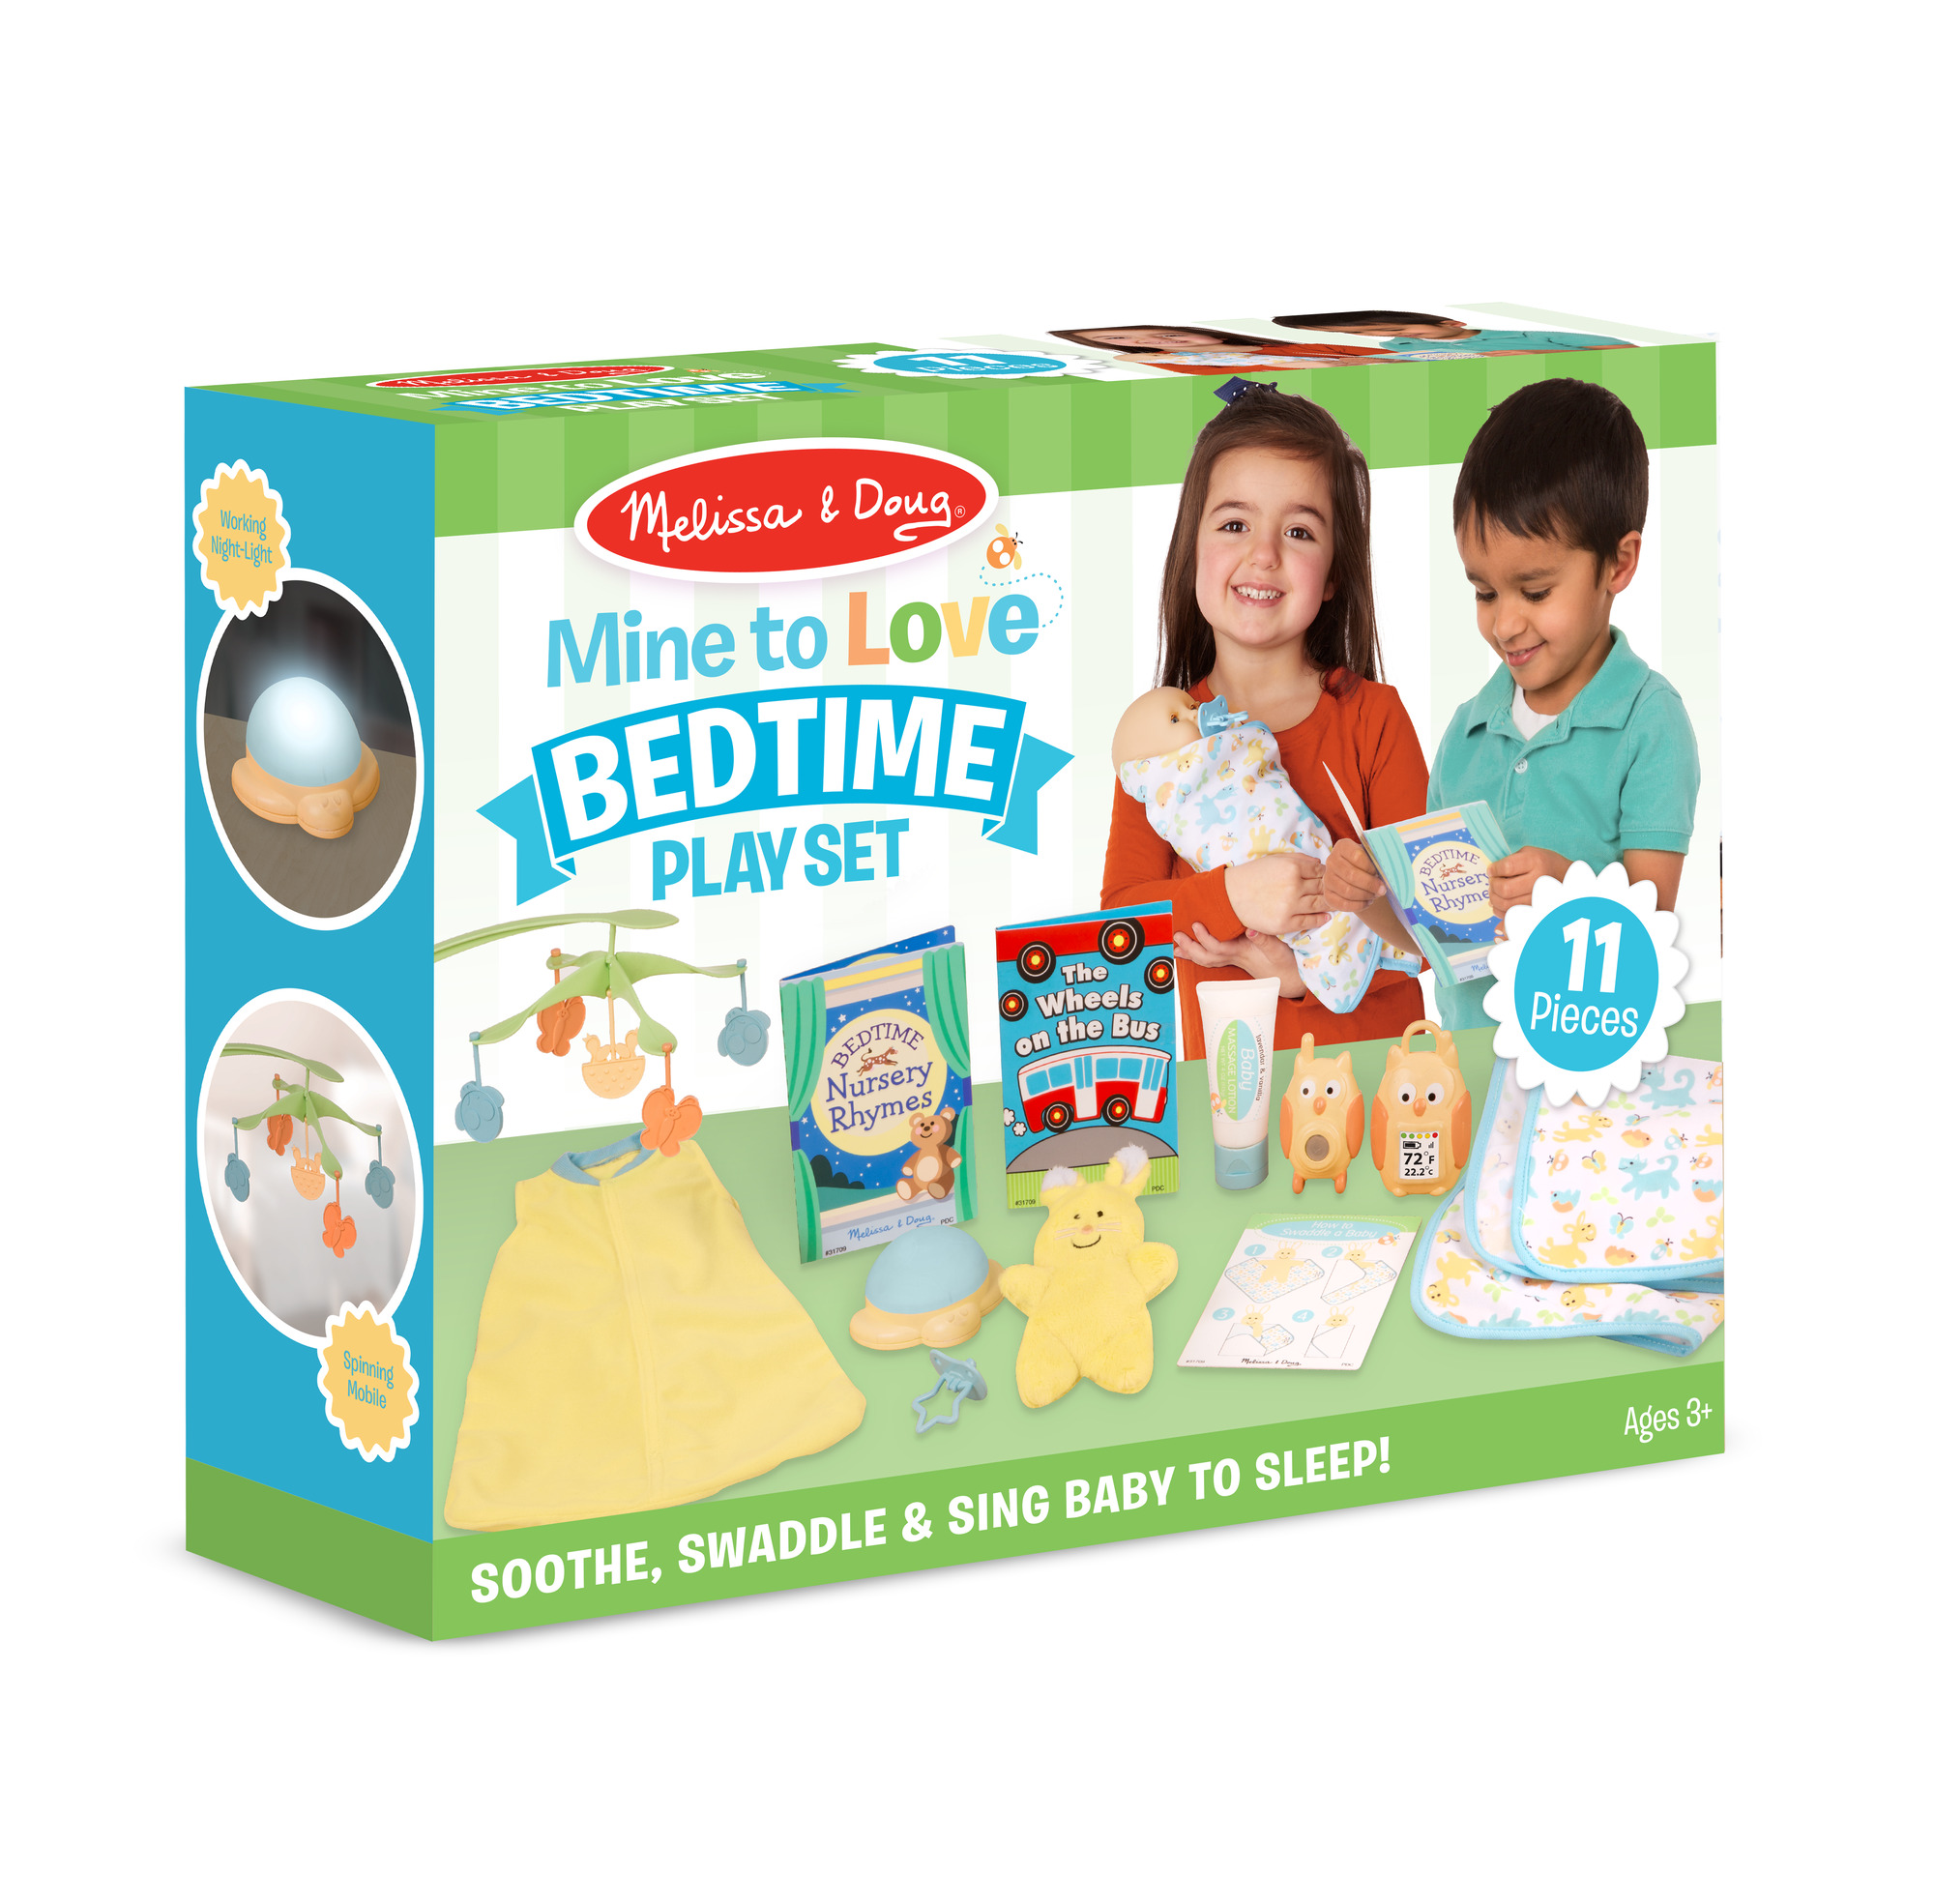 Melissa & Doug รุ่น 31709 Baby Bedtime Play Set ชุดอุปกรณ์เข้านอน ส่งเสริมการเล่นแบบอ่อนโยน ส่งเสริมจินตนาการในทางที่มีประโยชน์กับการเจริญเติบโตด้านจิตใจ